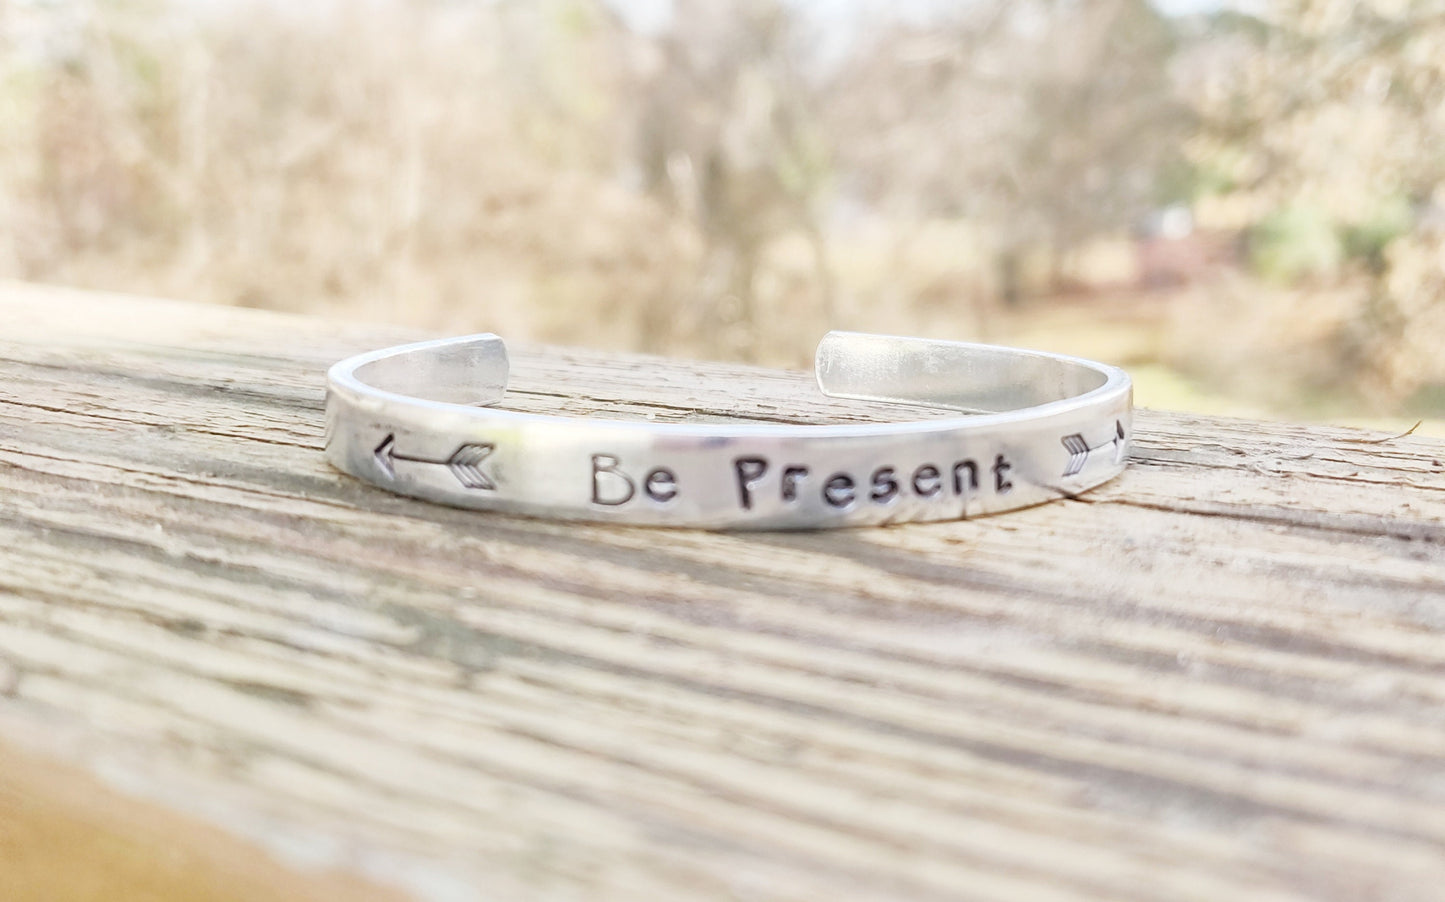 Be Present Cuff Bracelet, Encouragement Bracelet, Words Bracelet, Graduation Bracelet, Mother's Day Bracelet, Mantra Bracelet, Gift for Her